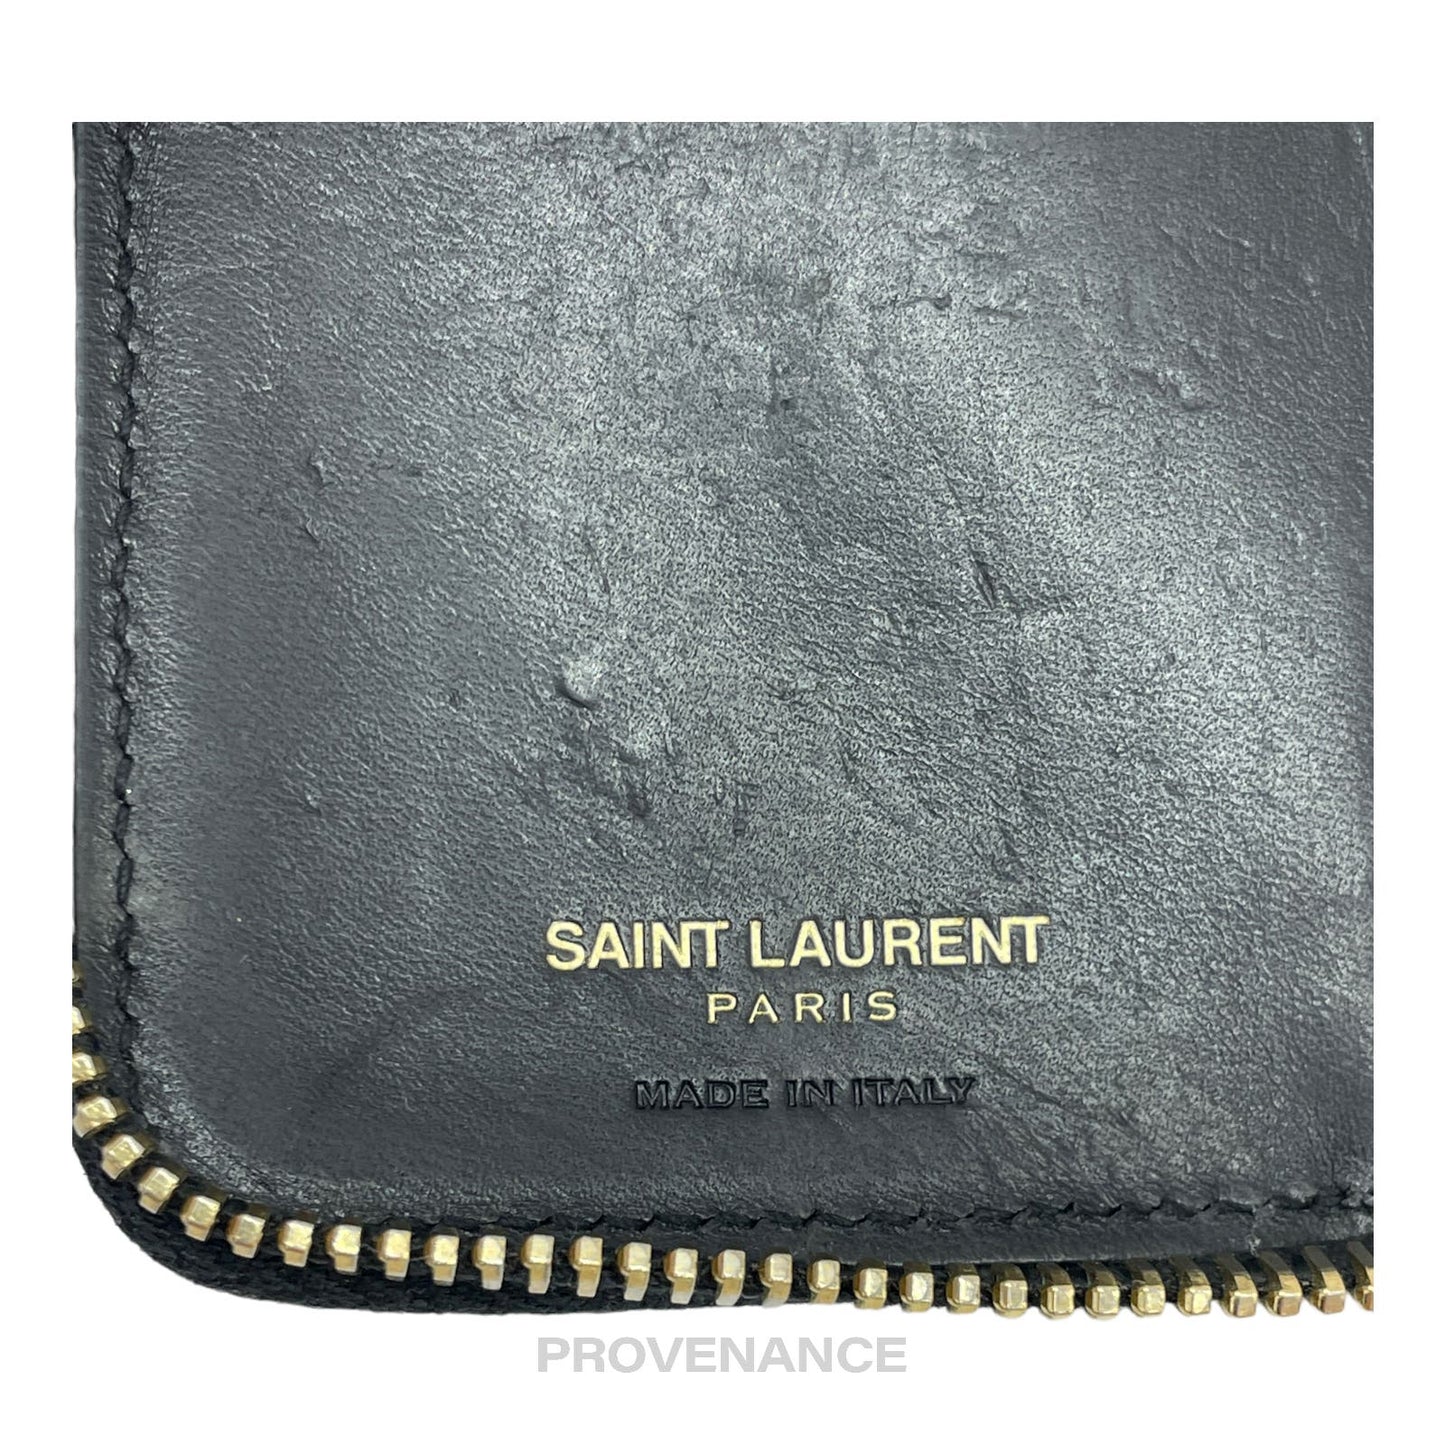 🔴 Saint Laurent Paris SLP 6 Key Card Wallet - Monogram